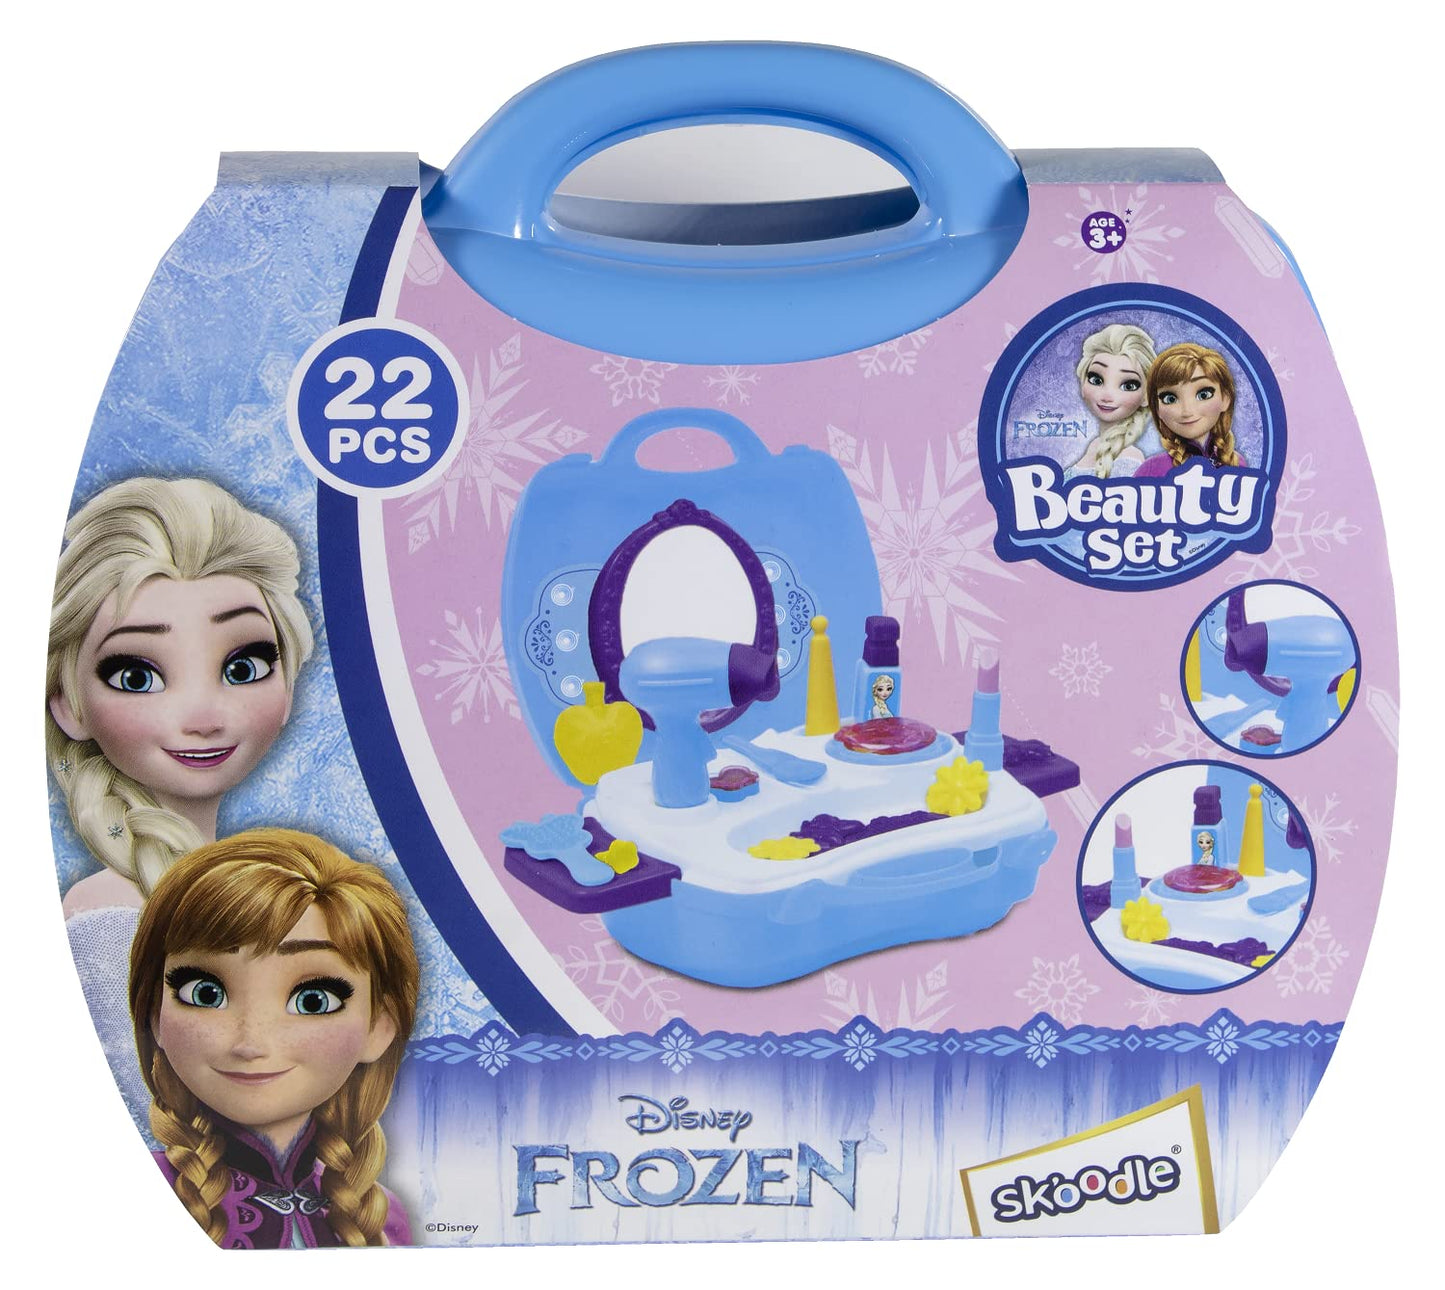 Skoodle Disney Frozen-Themed Beauty Set, Makeup Accessories for Kids, Blue Plastic Case, Age 3+ (22 Pieces)